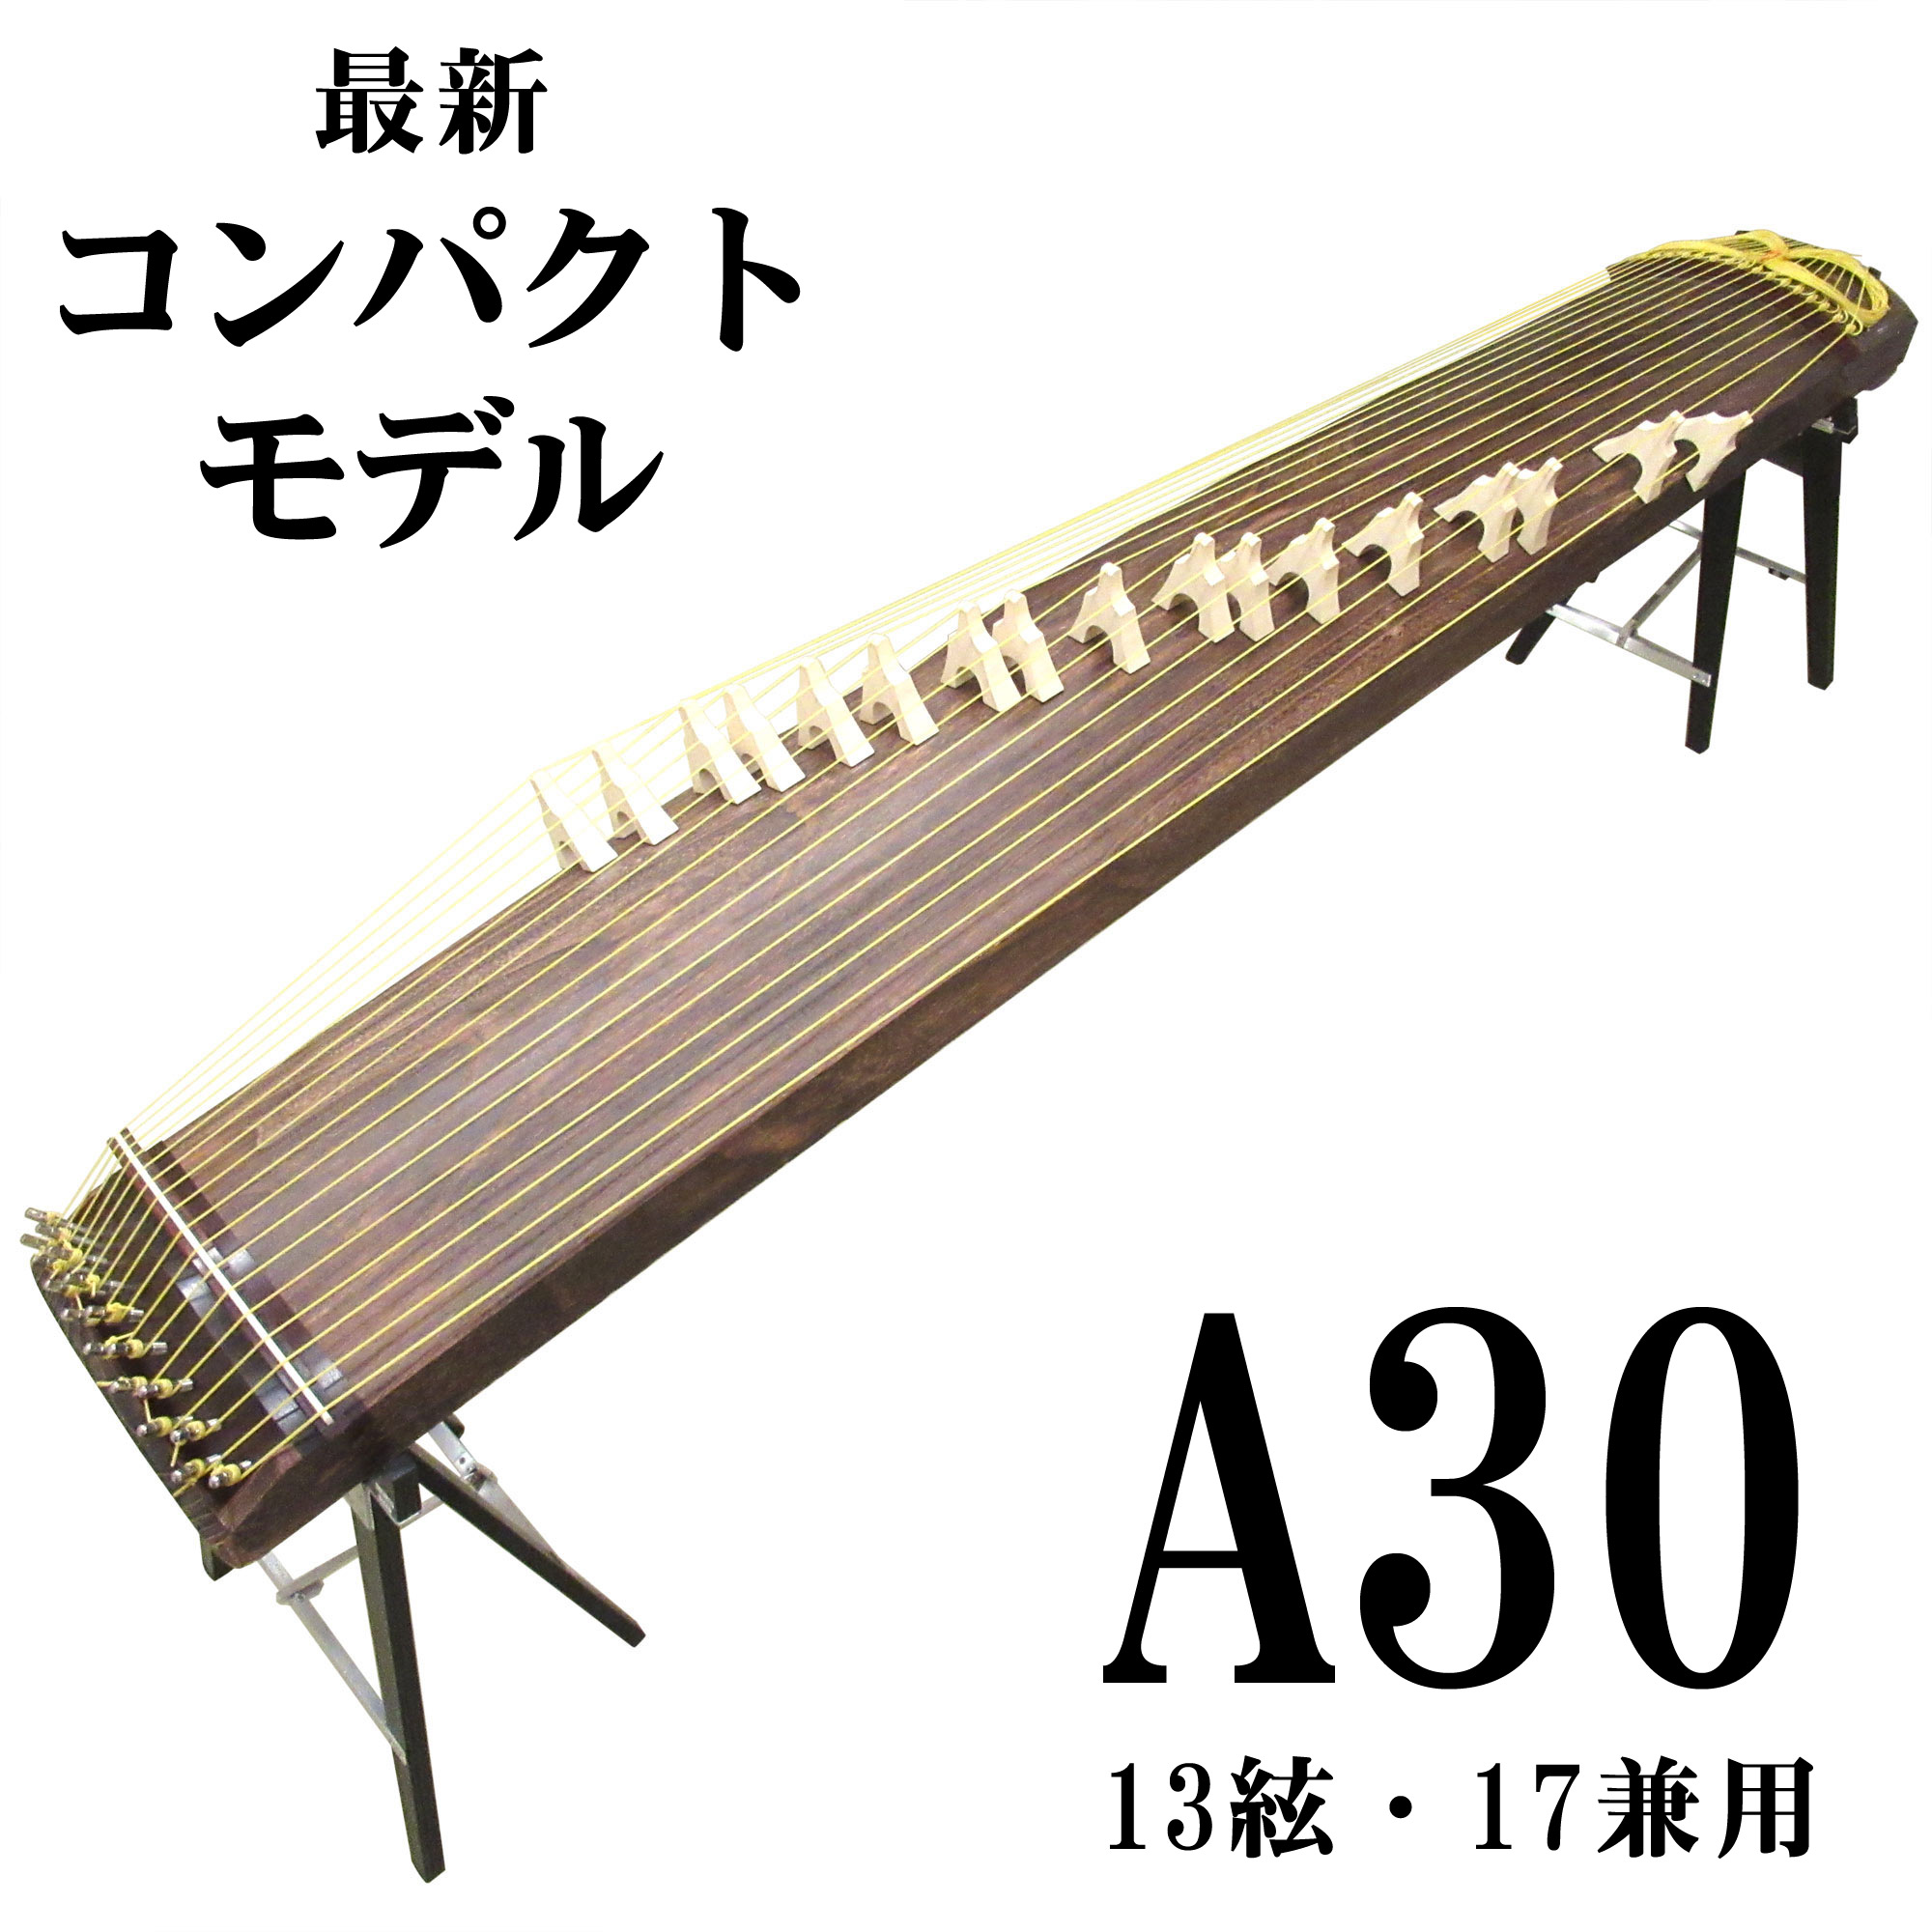 日本最大のブランド 十三弦 箏 琴 箏柱 箏爪 チューナー 鳥居台 楽譜 